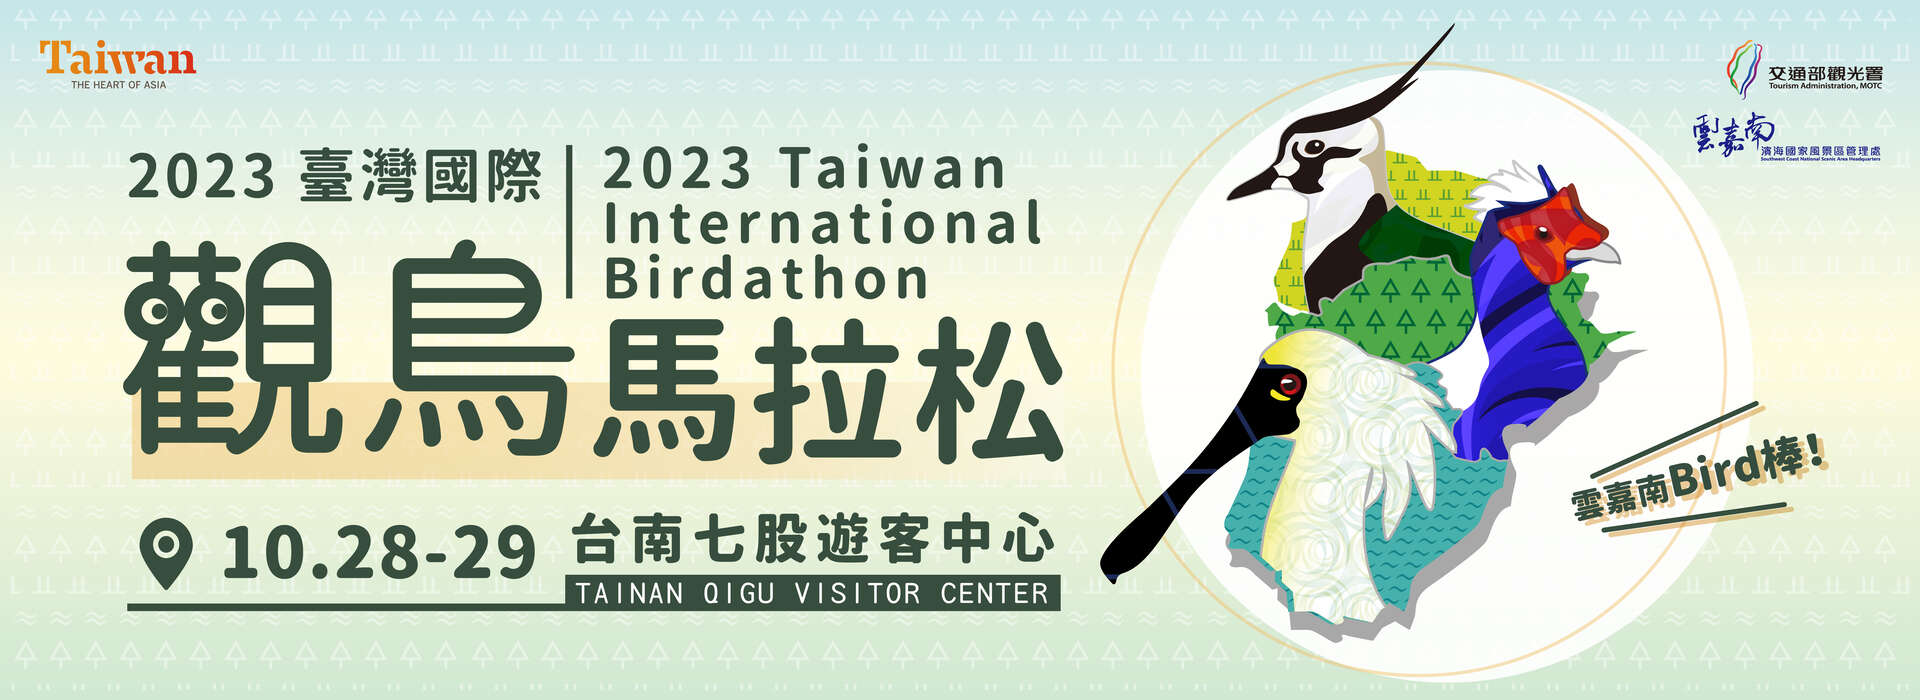 2023臺灣國際觀鳥馬拉松